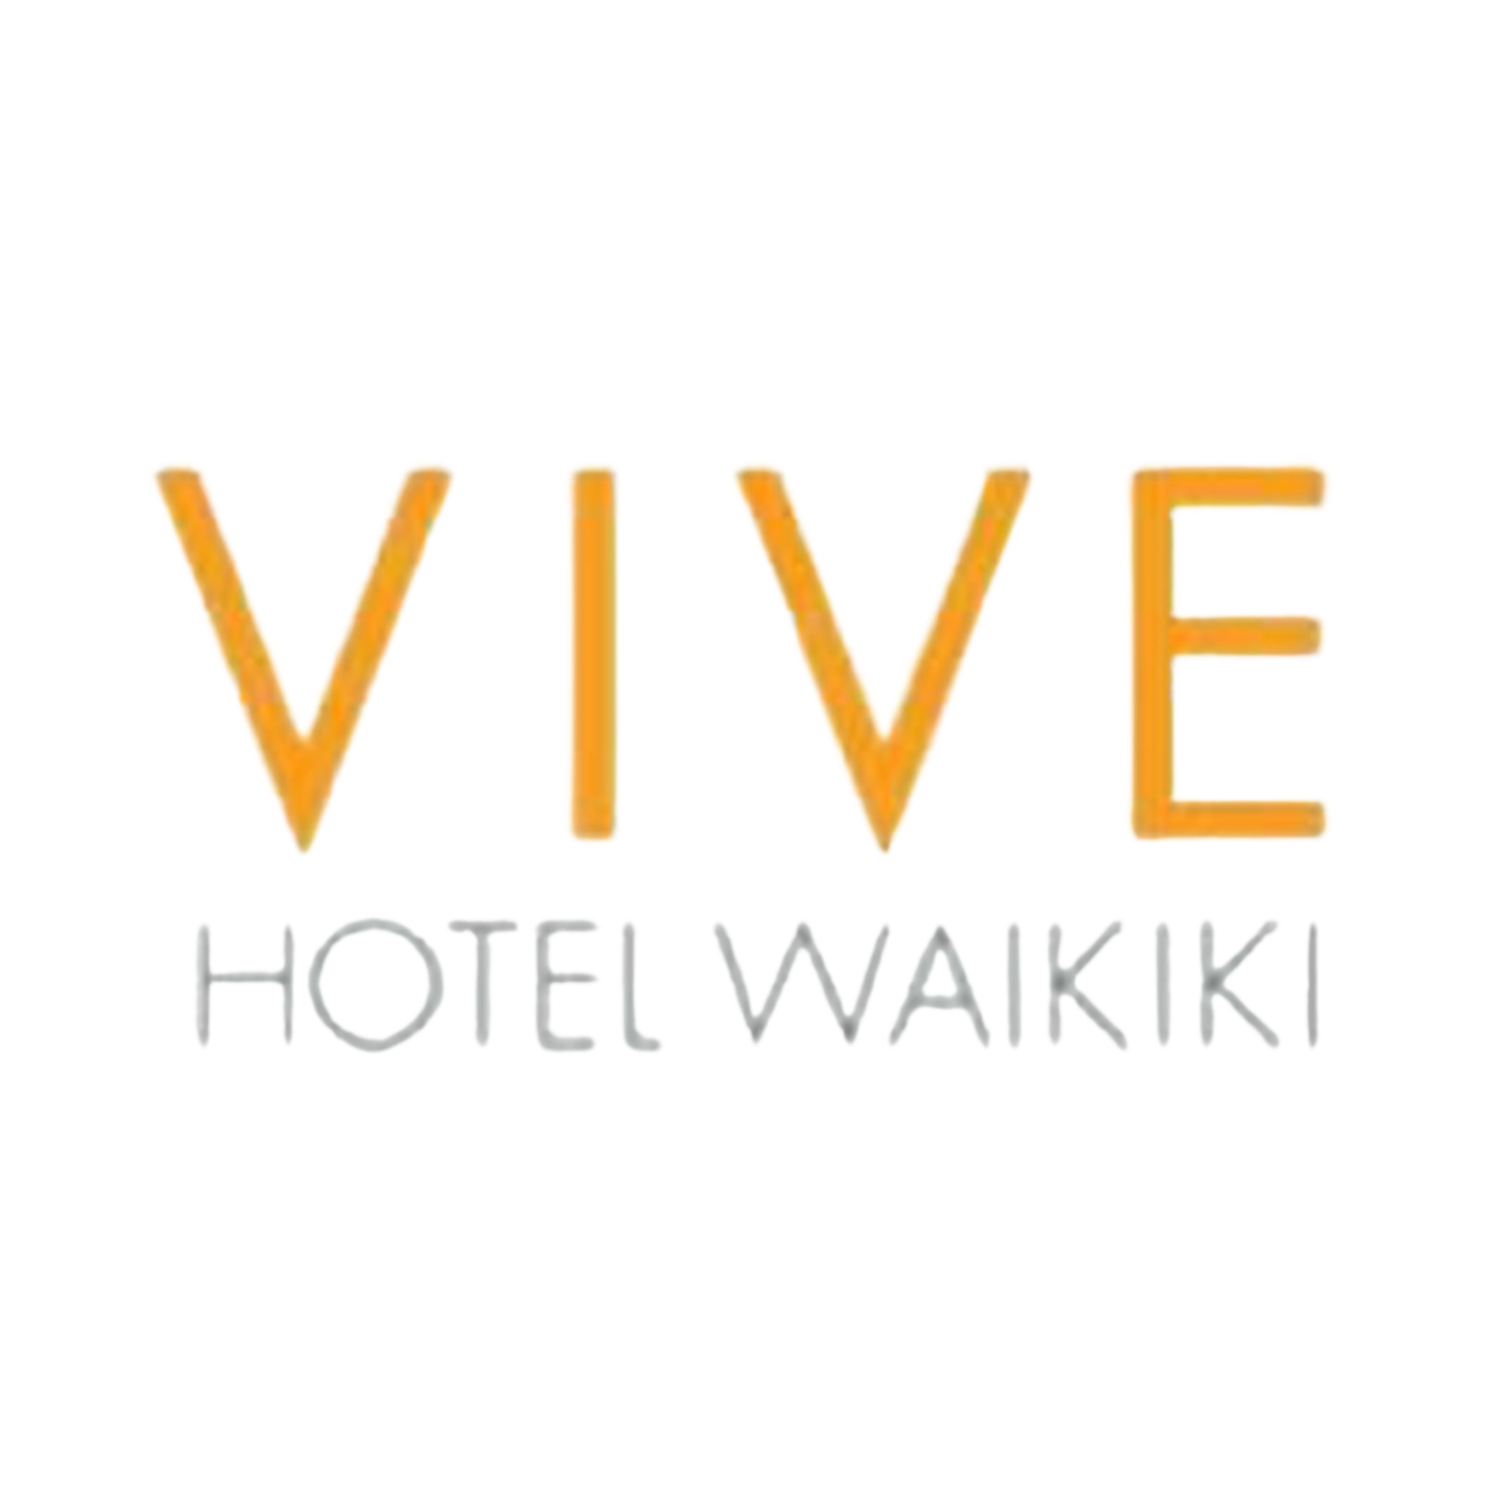 Vive Hotel Waikiki.png